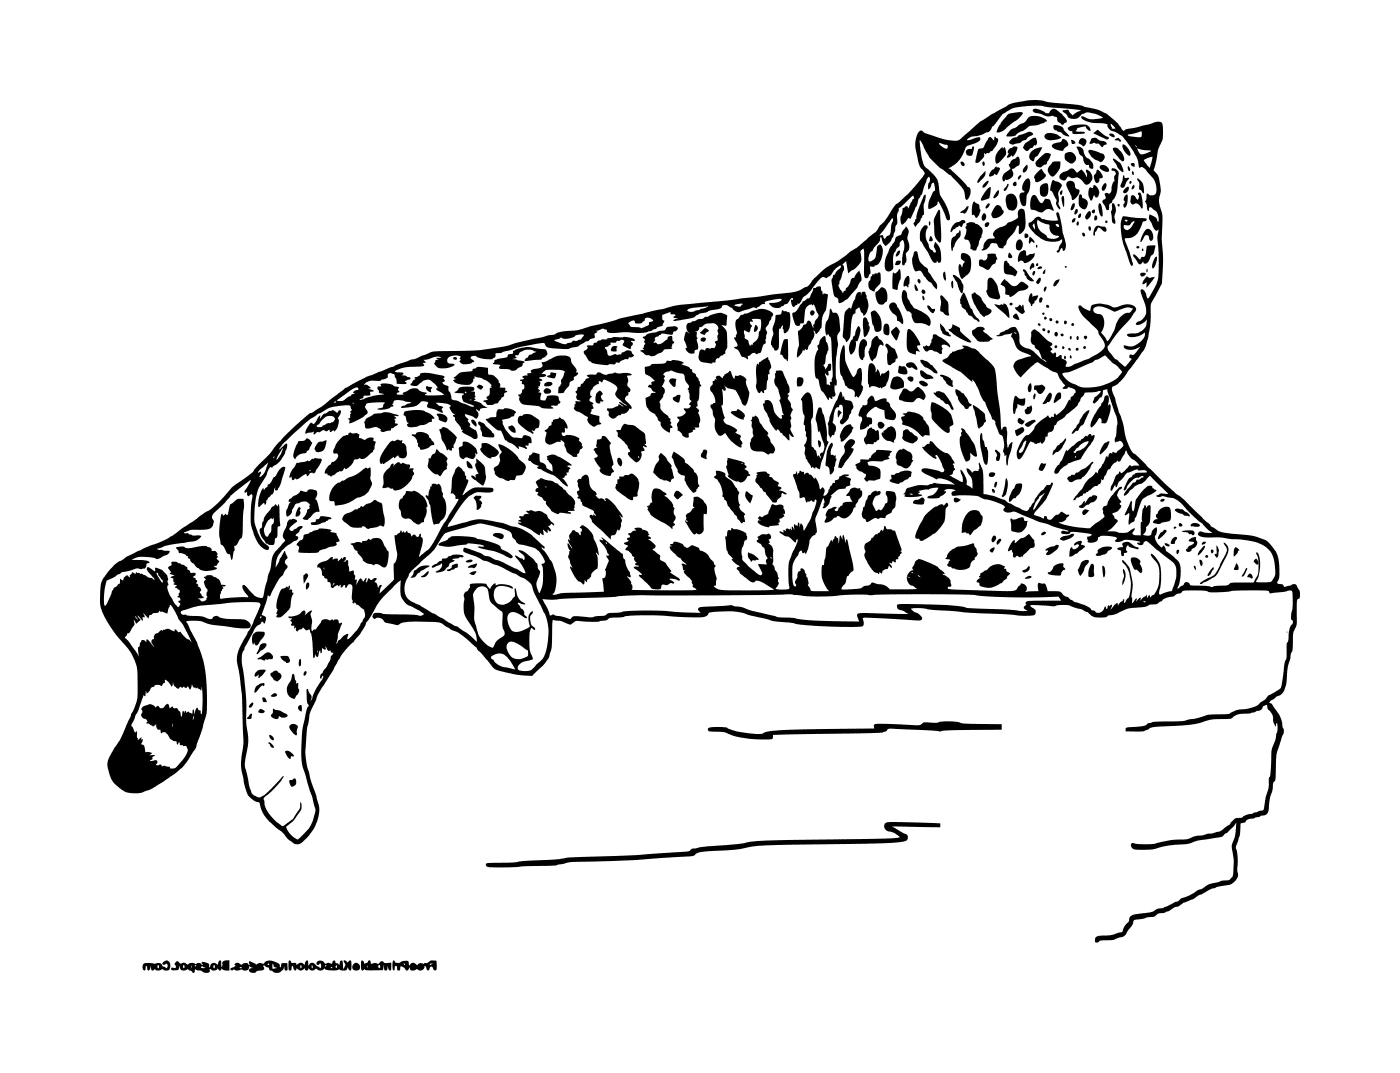  Um leopardo mentiroso 